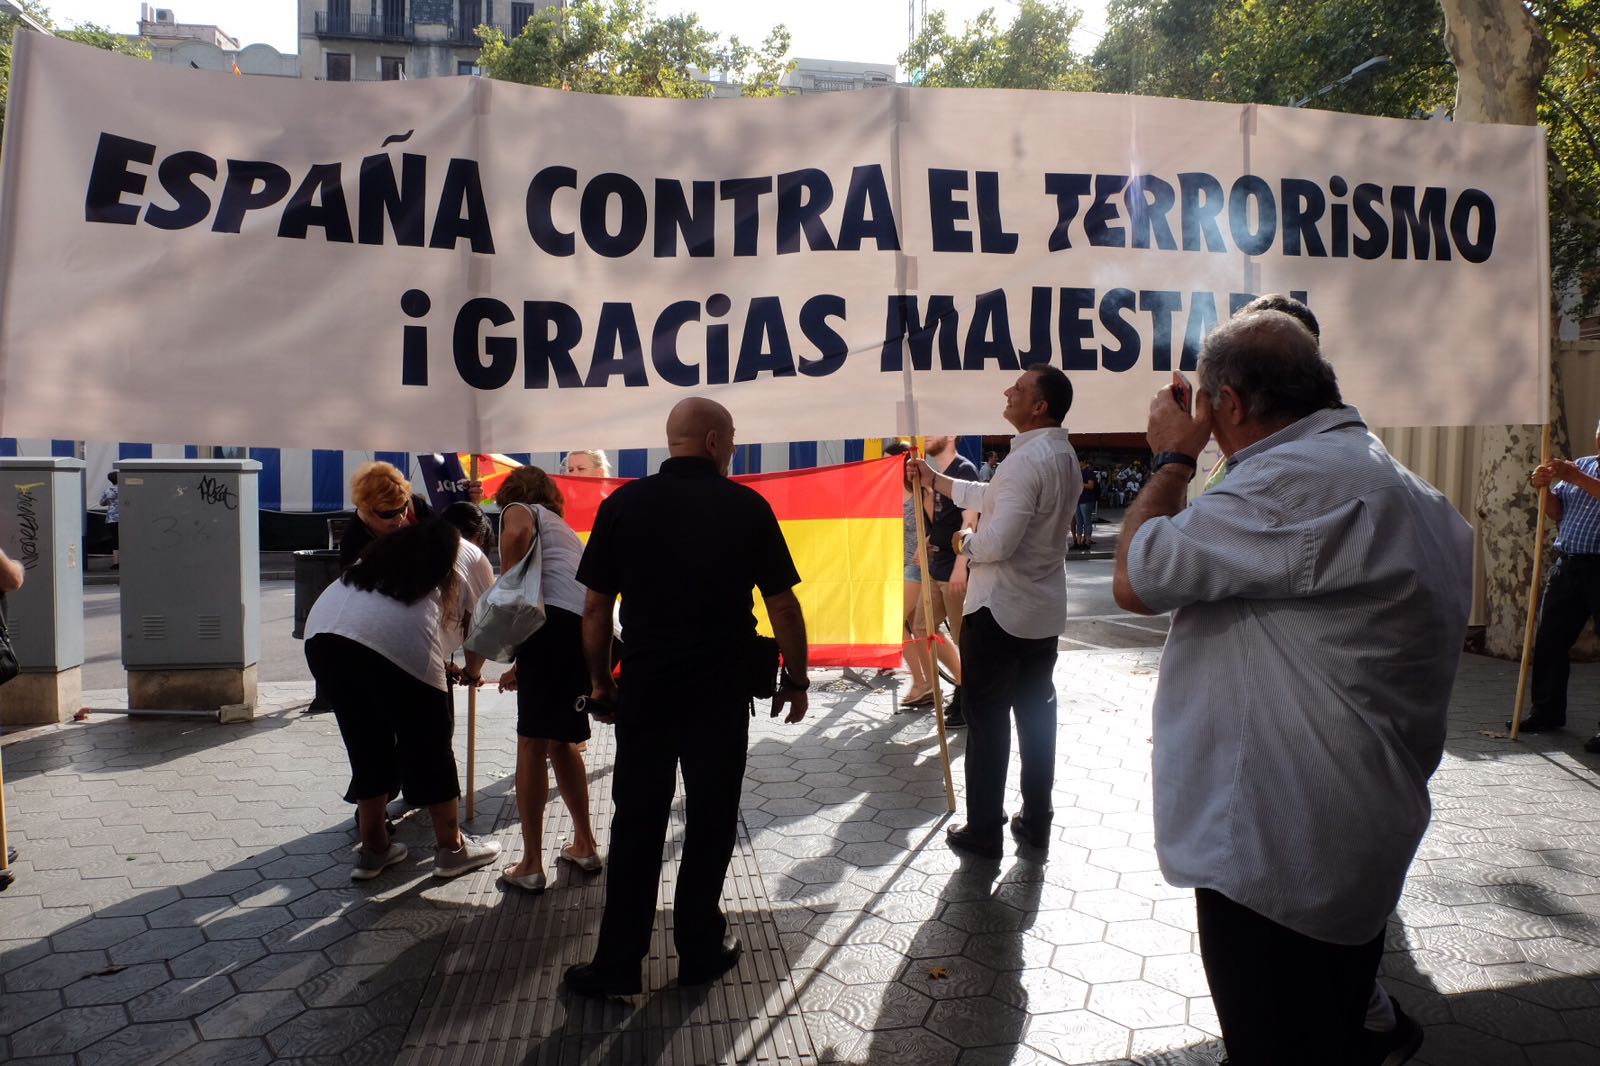 Barcelona se manifiesta contra el terrorismo bajo el lema "No tengo miedo" 3